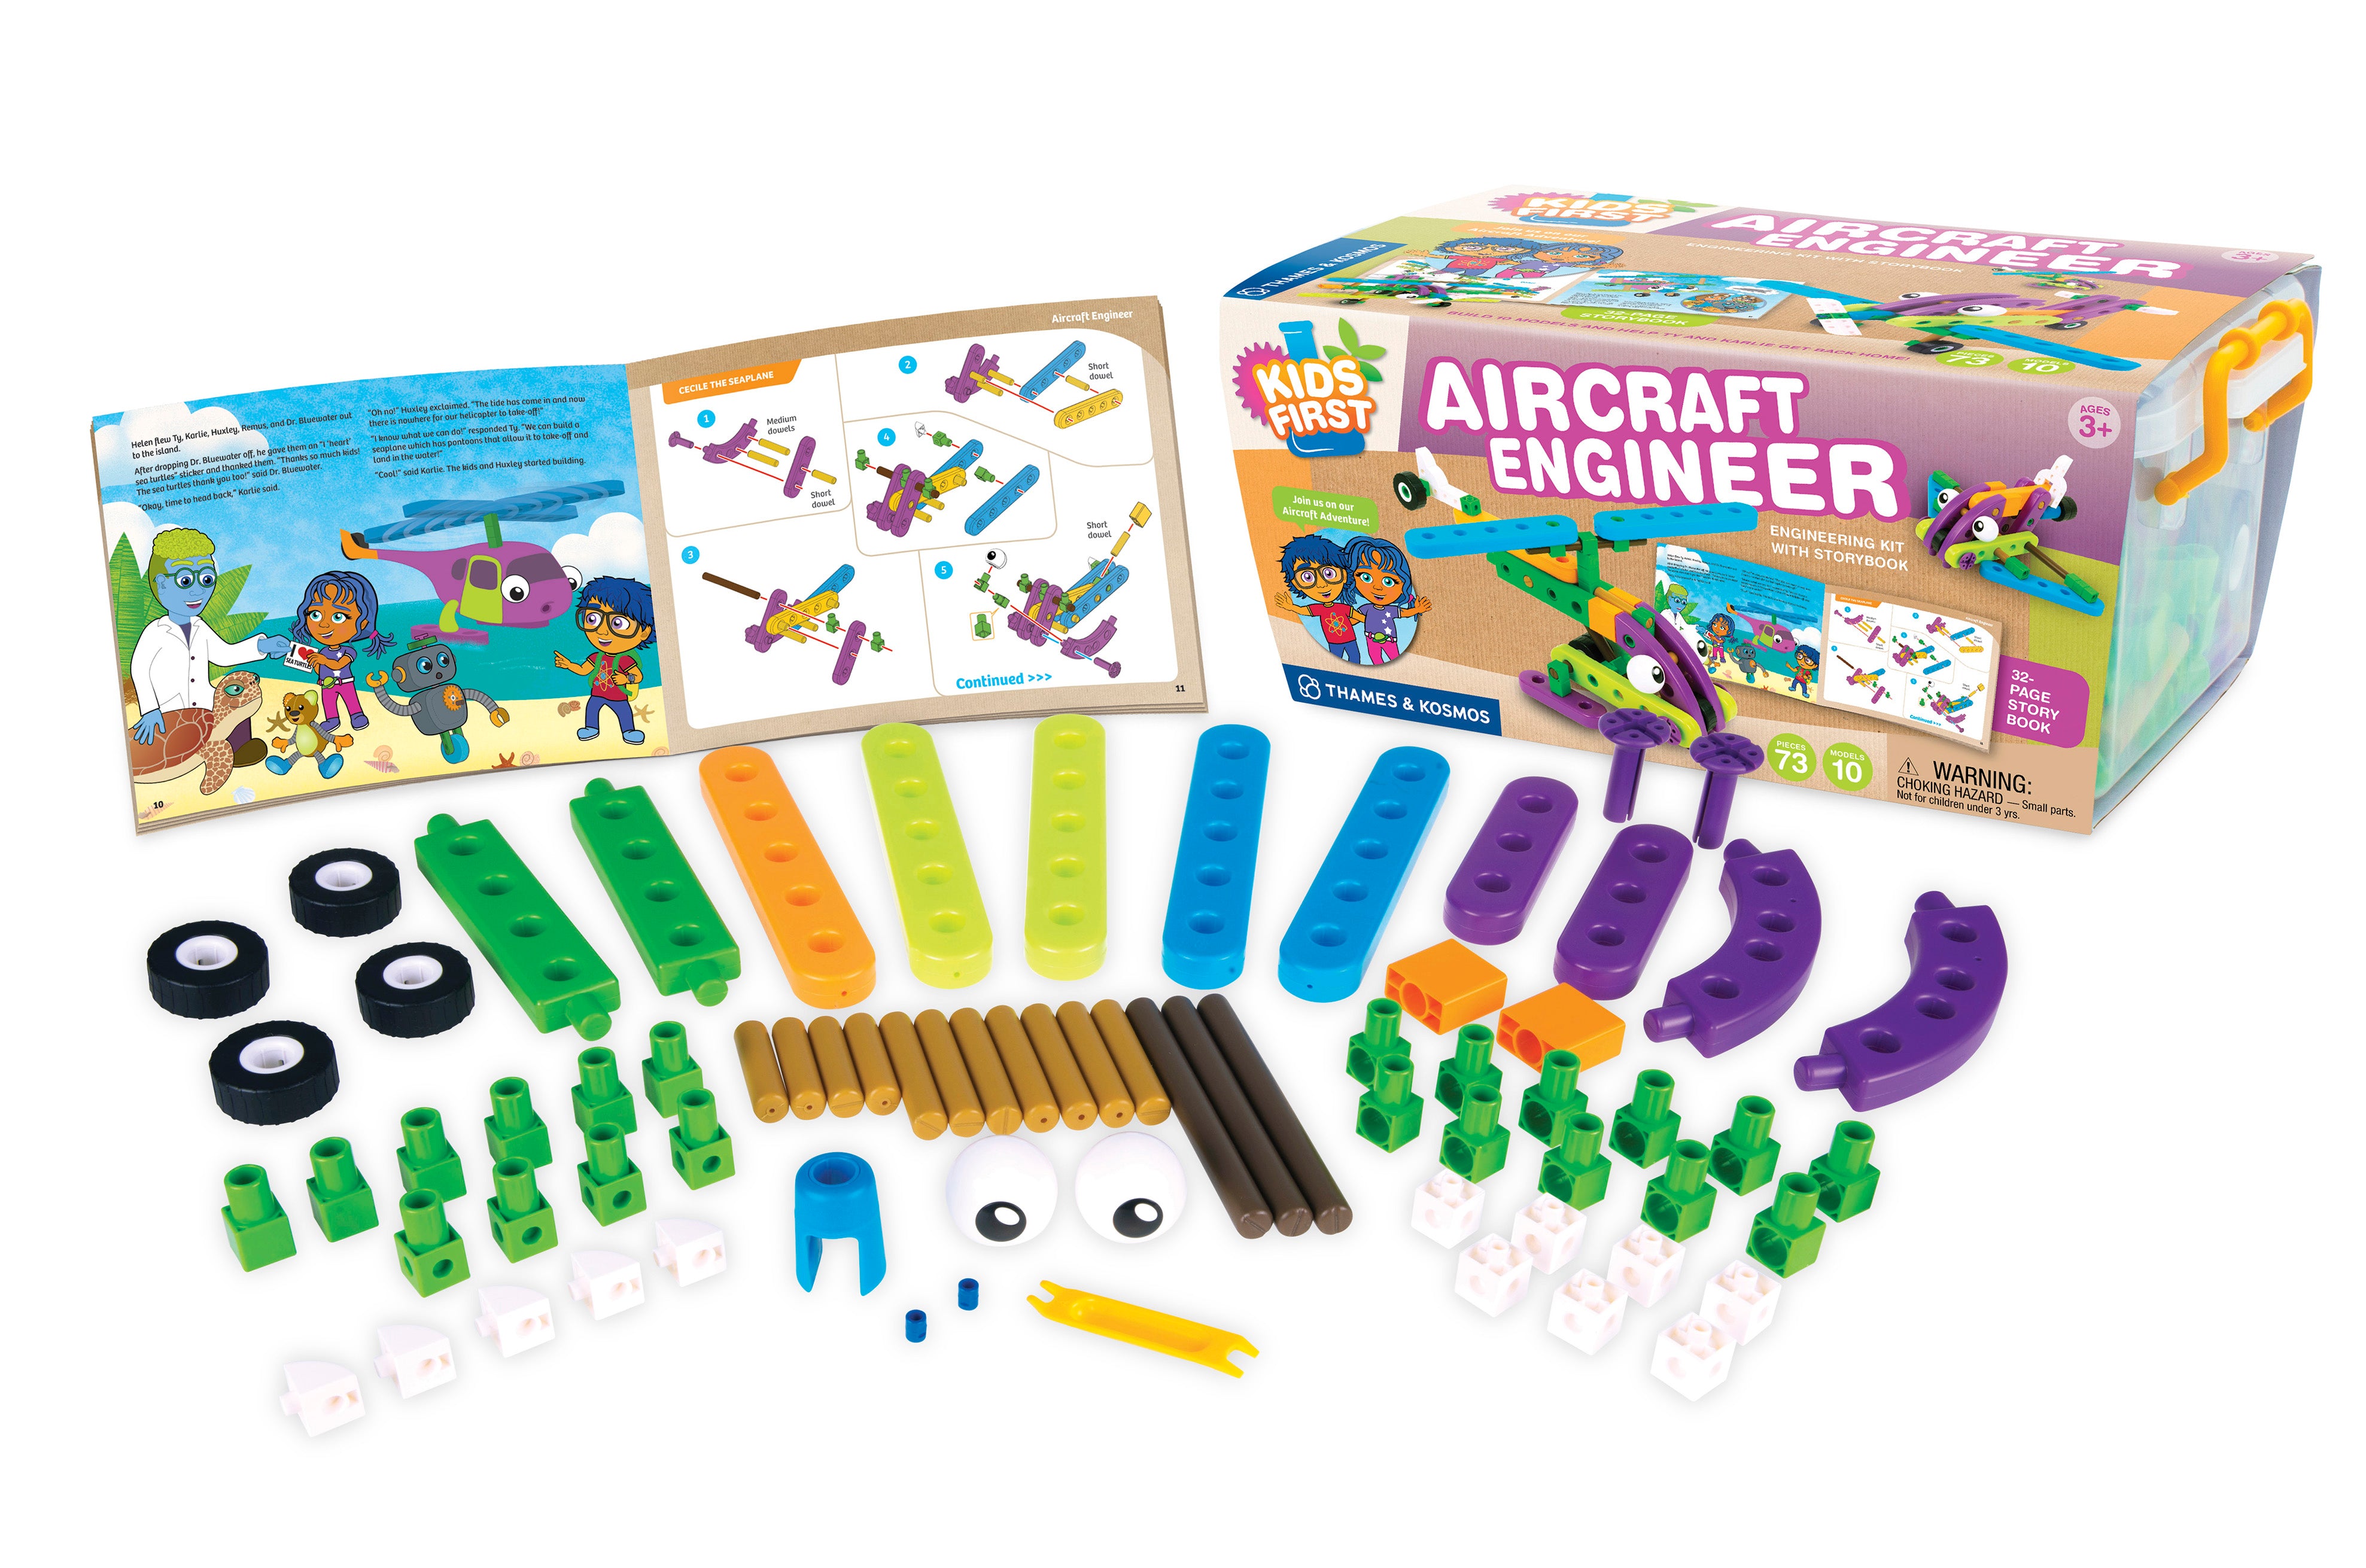 Kids First Aircraft Engineer    